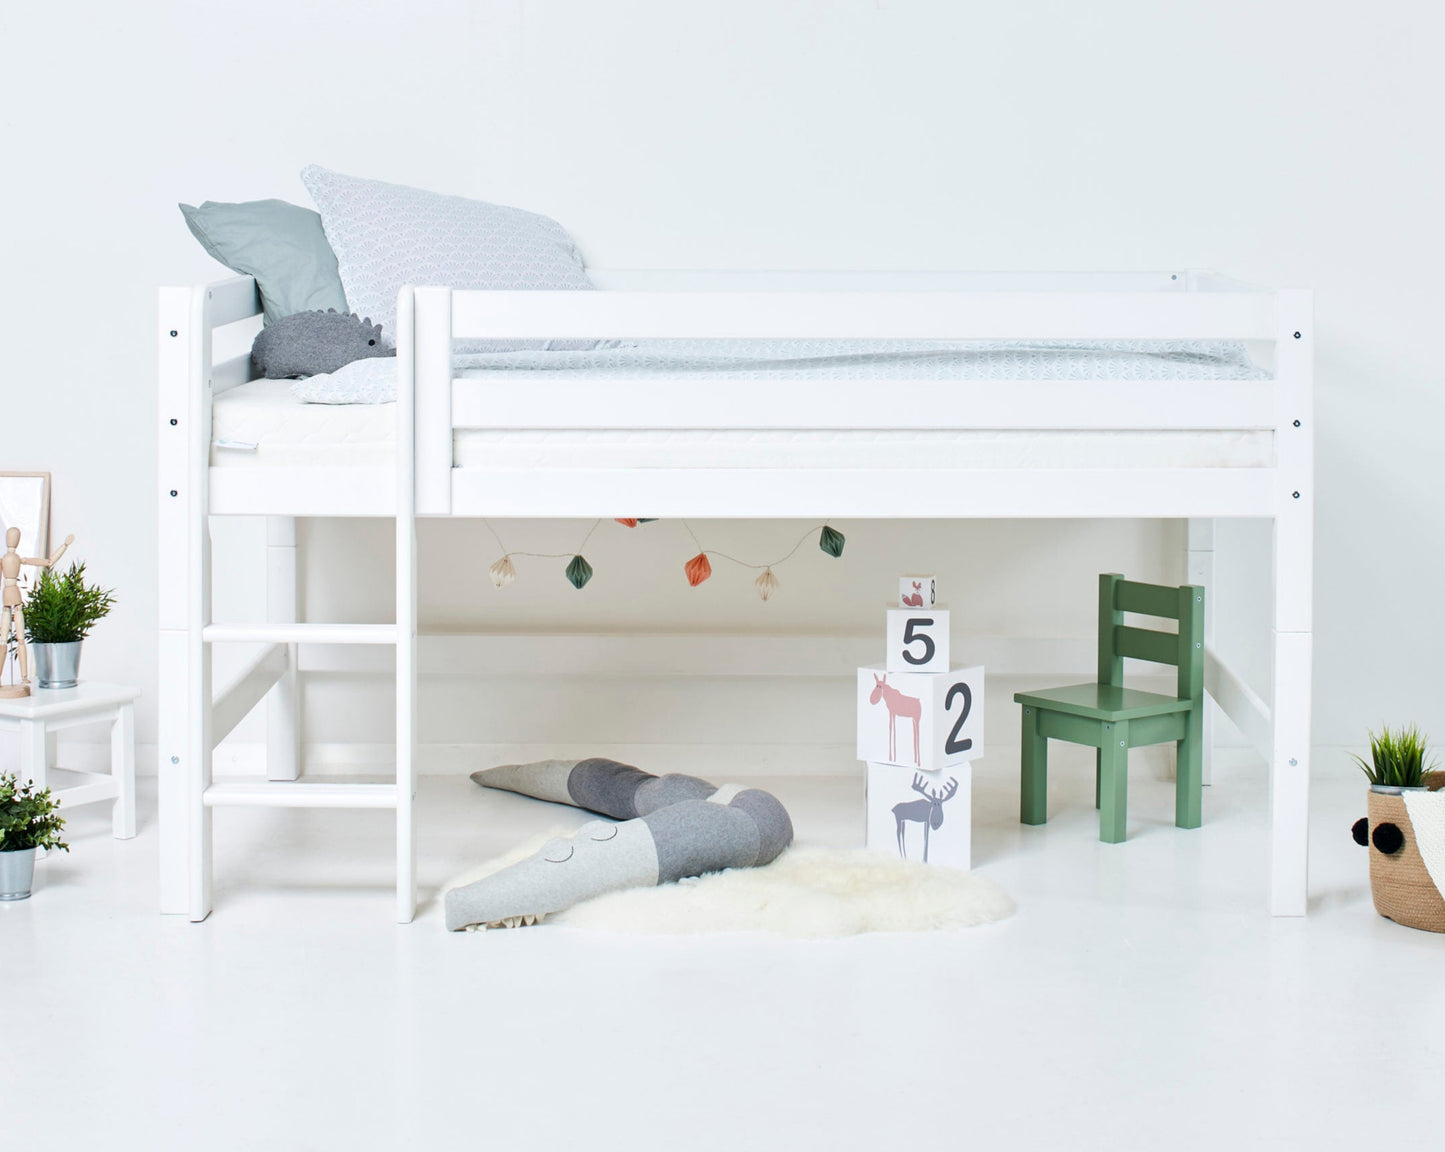 ECO Luxury - Moduuli puolikorkealle sängylle - 120x200 cm - valkoinen